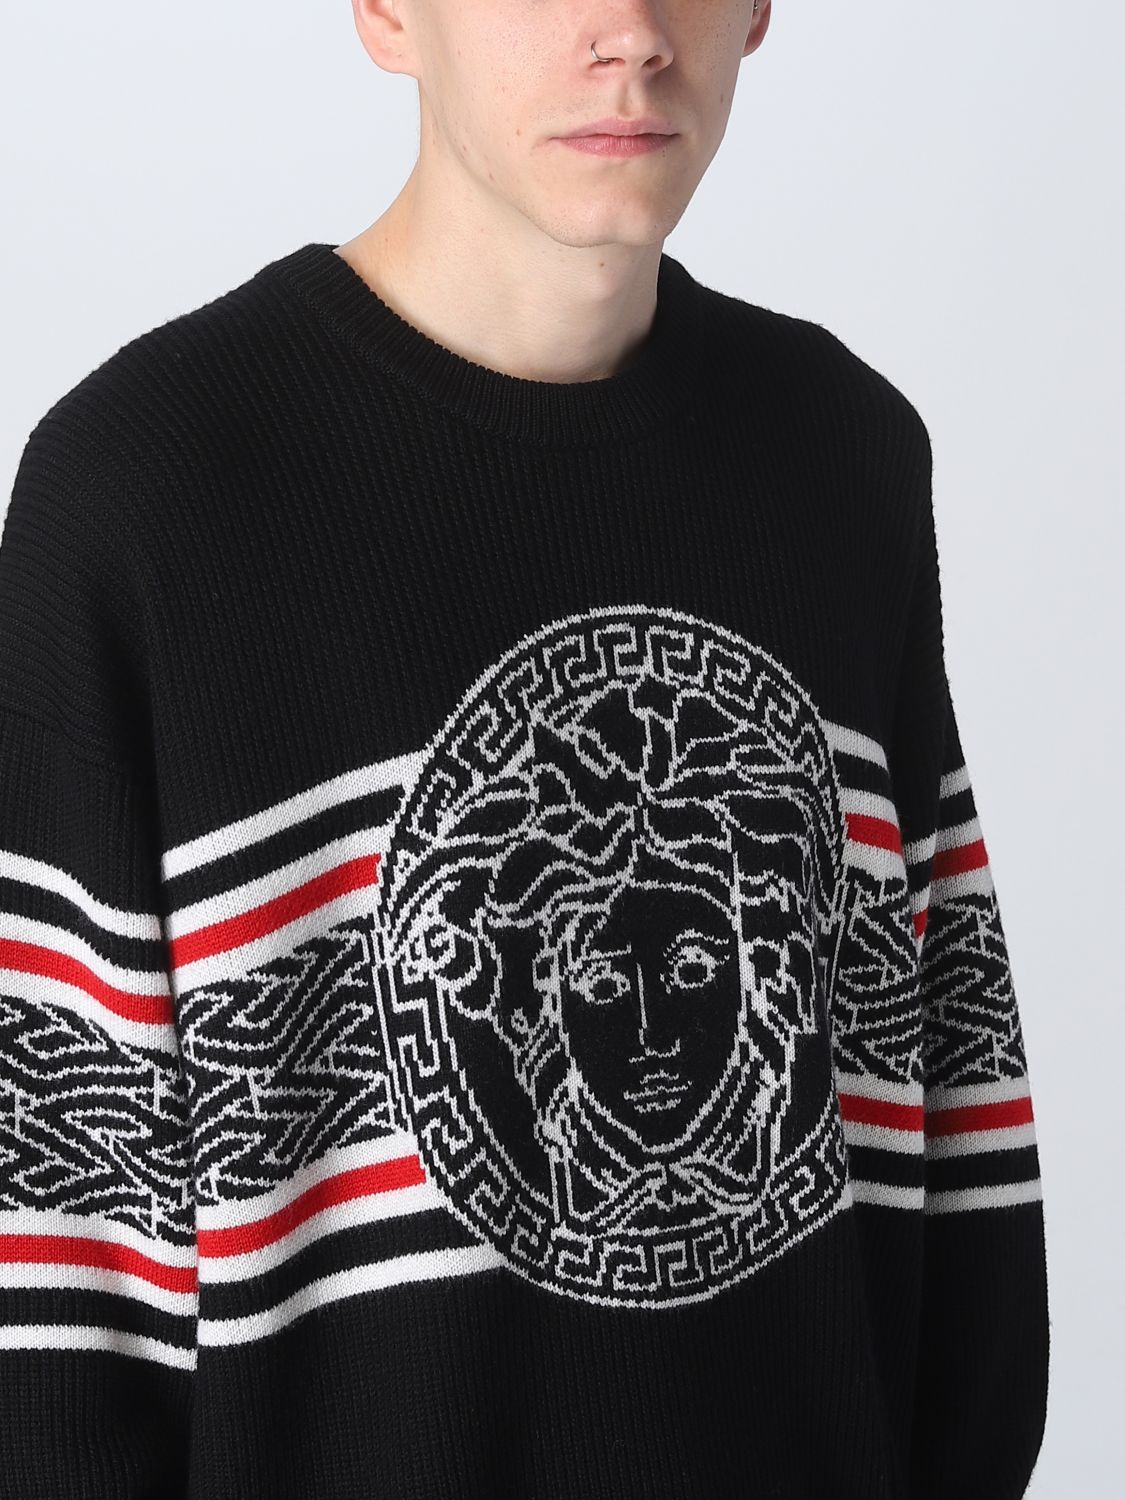 Bisschop JEP Voorbeeld VERSACE: sweater for man - Black | Versace sweater 10079811A05695 online on  GIGLIO.COM